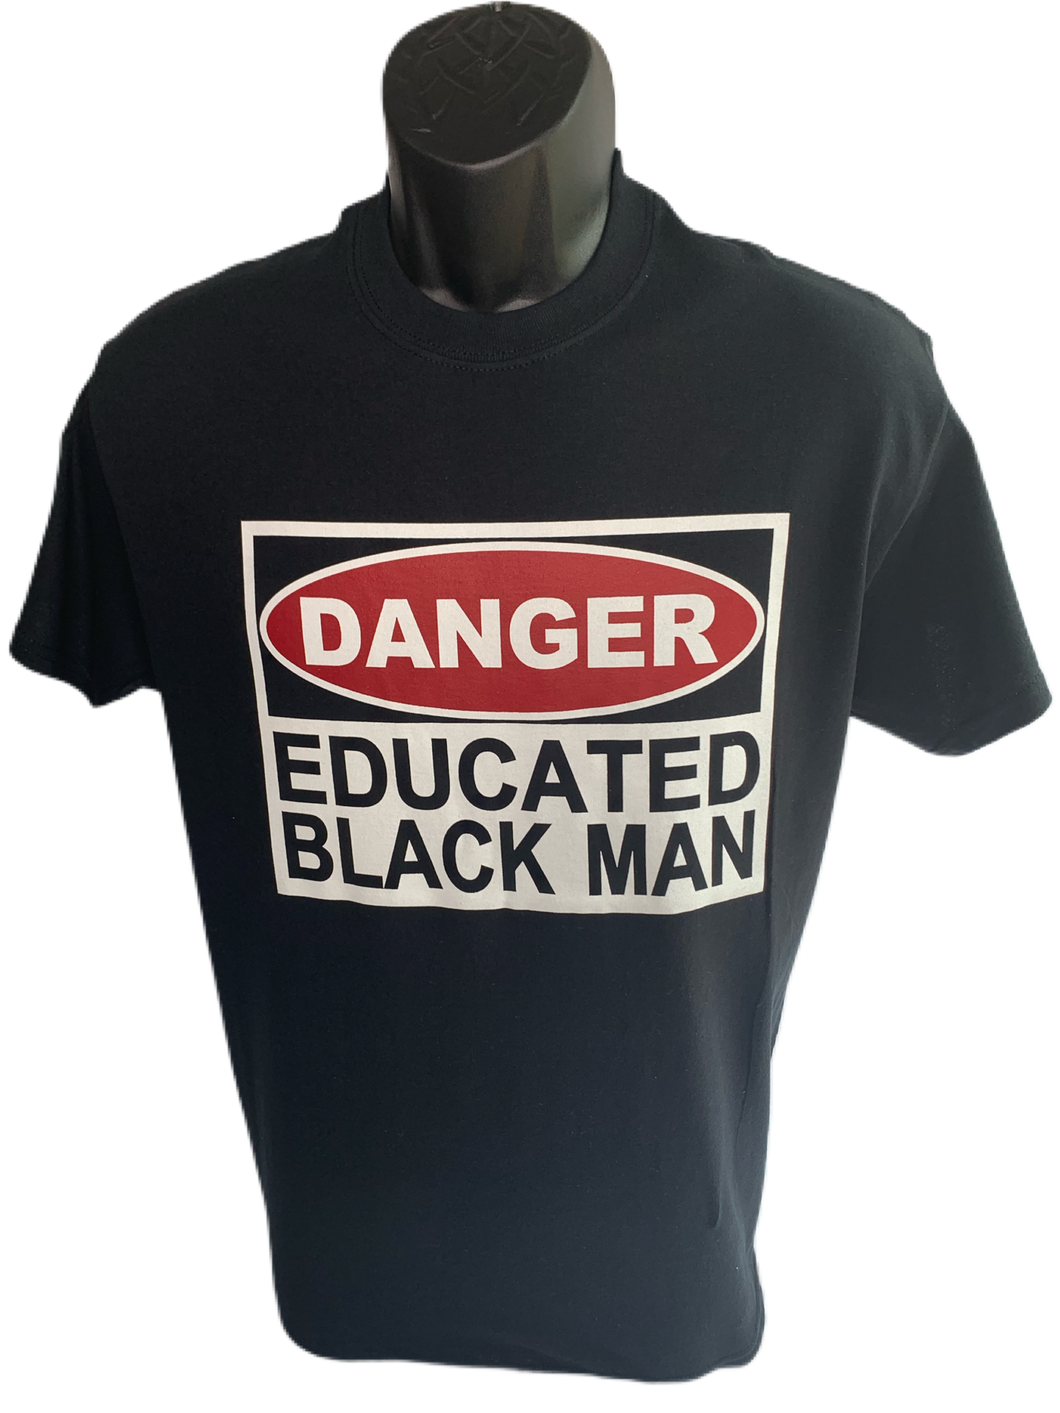 Danger Educated Black Man